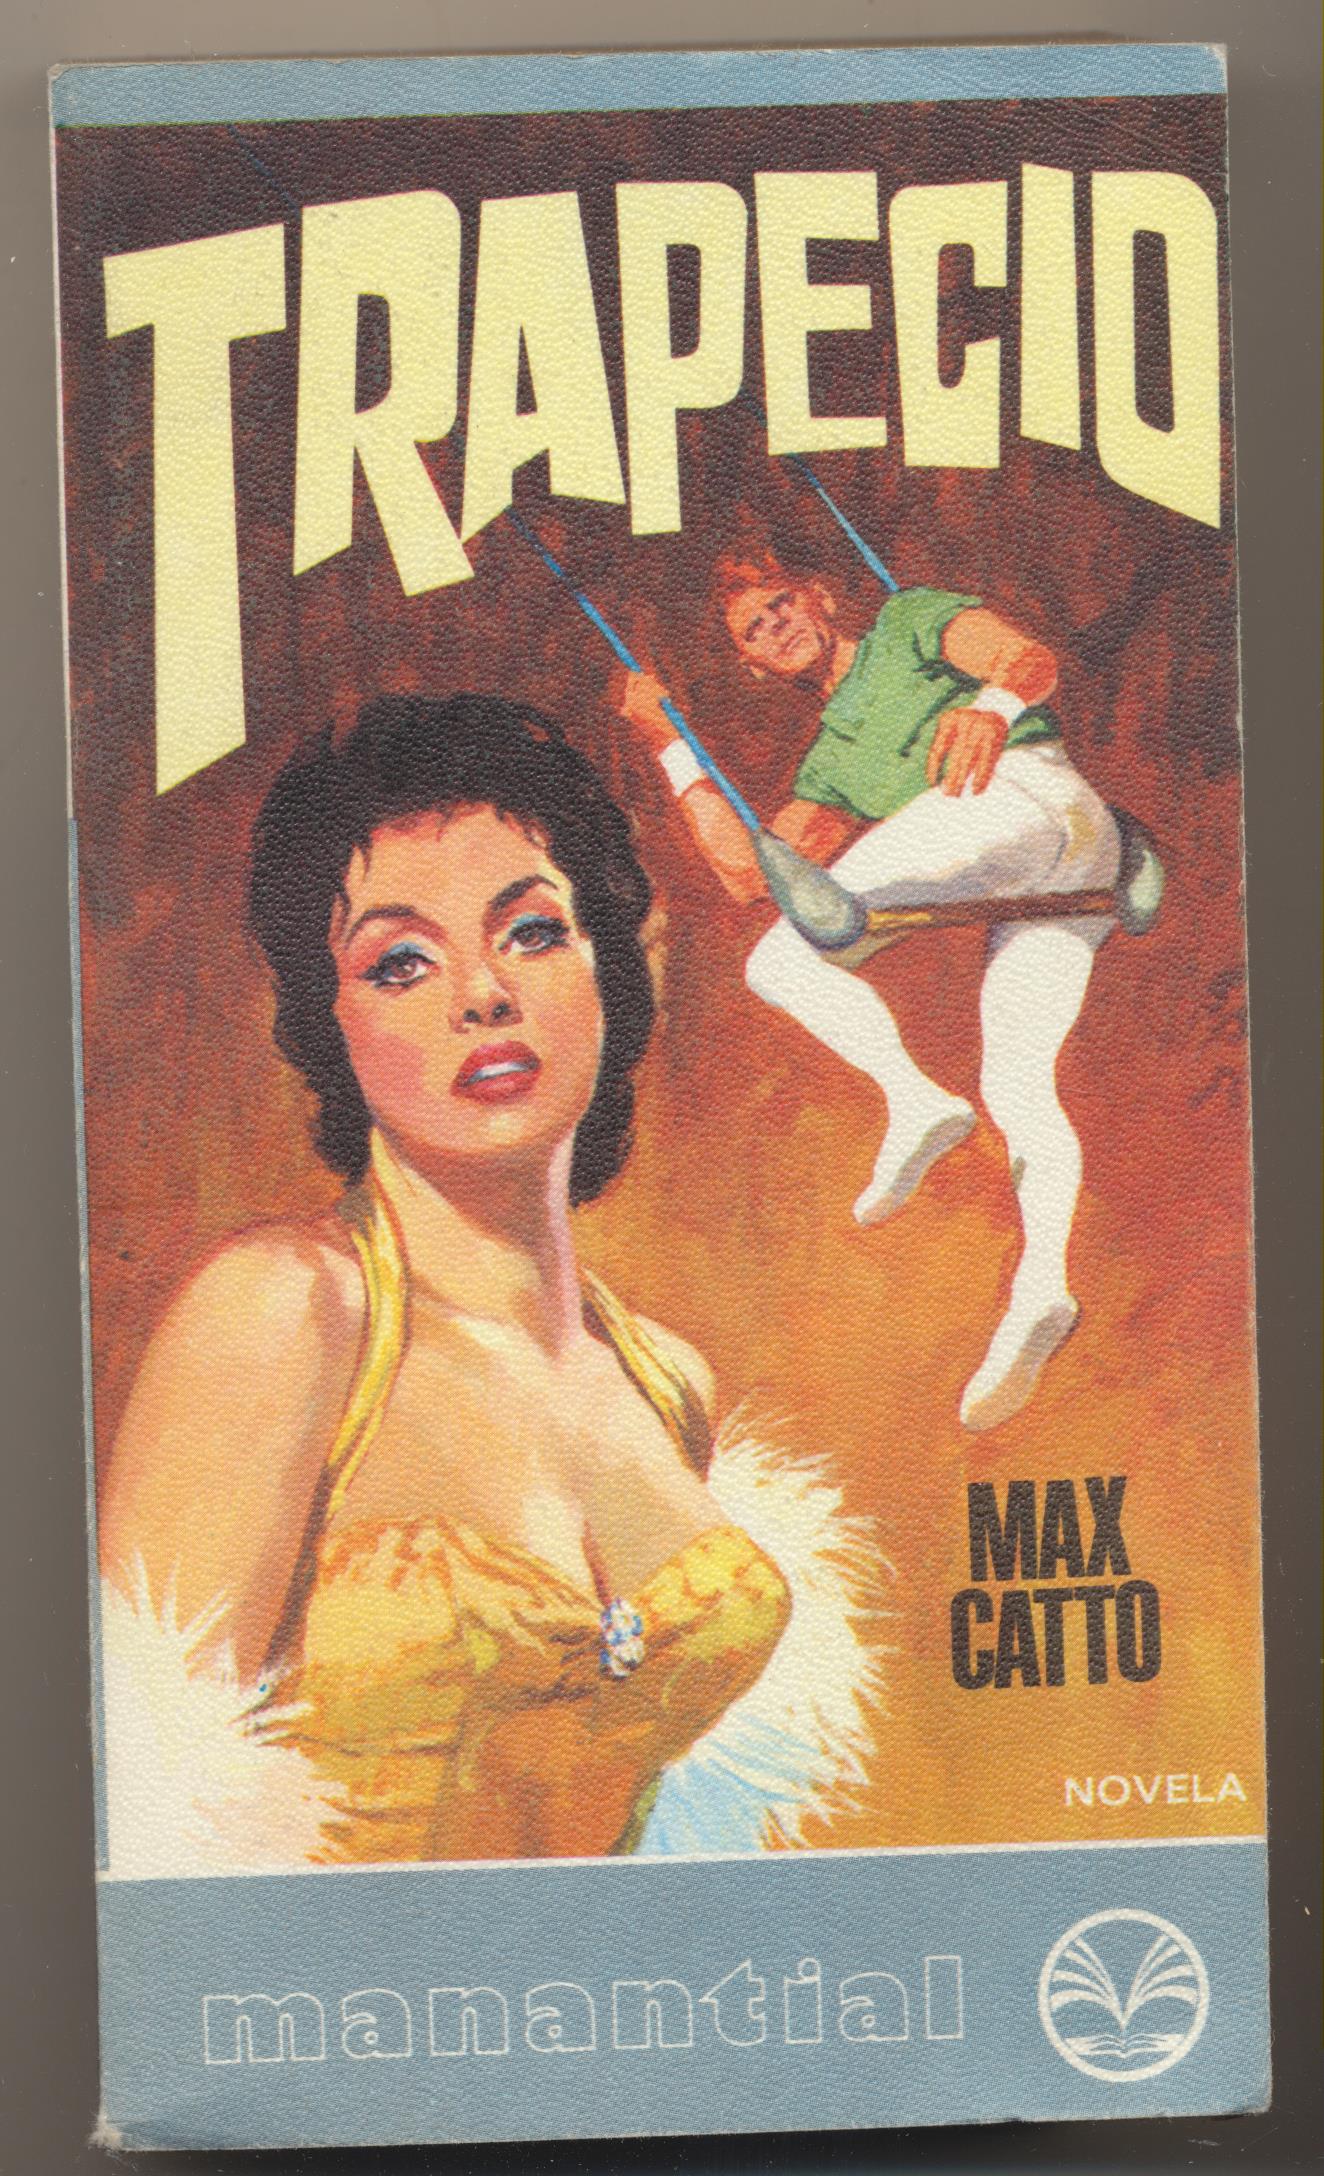 Max Catto. Trapecio. Manantial. 1ª Edición Plaza & Janes 1978. SIN USAR